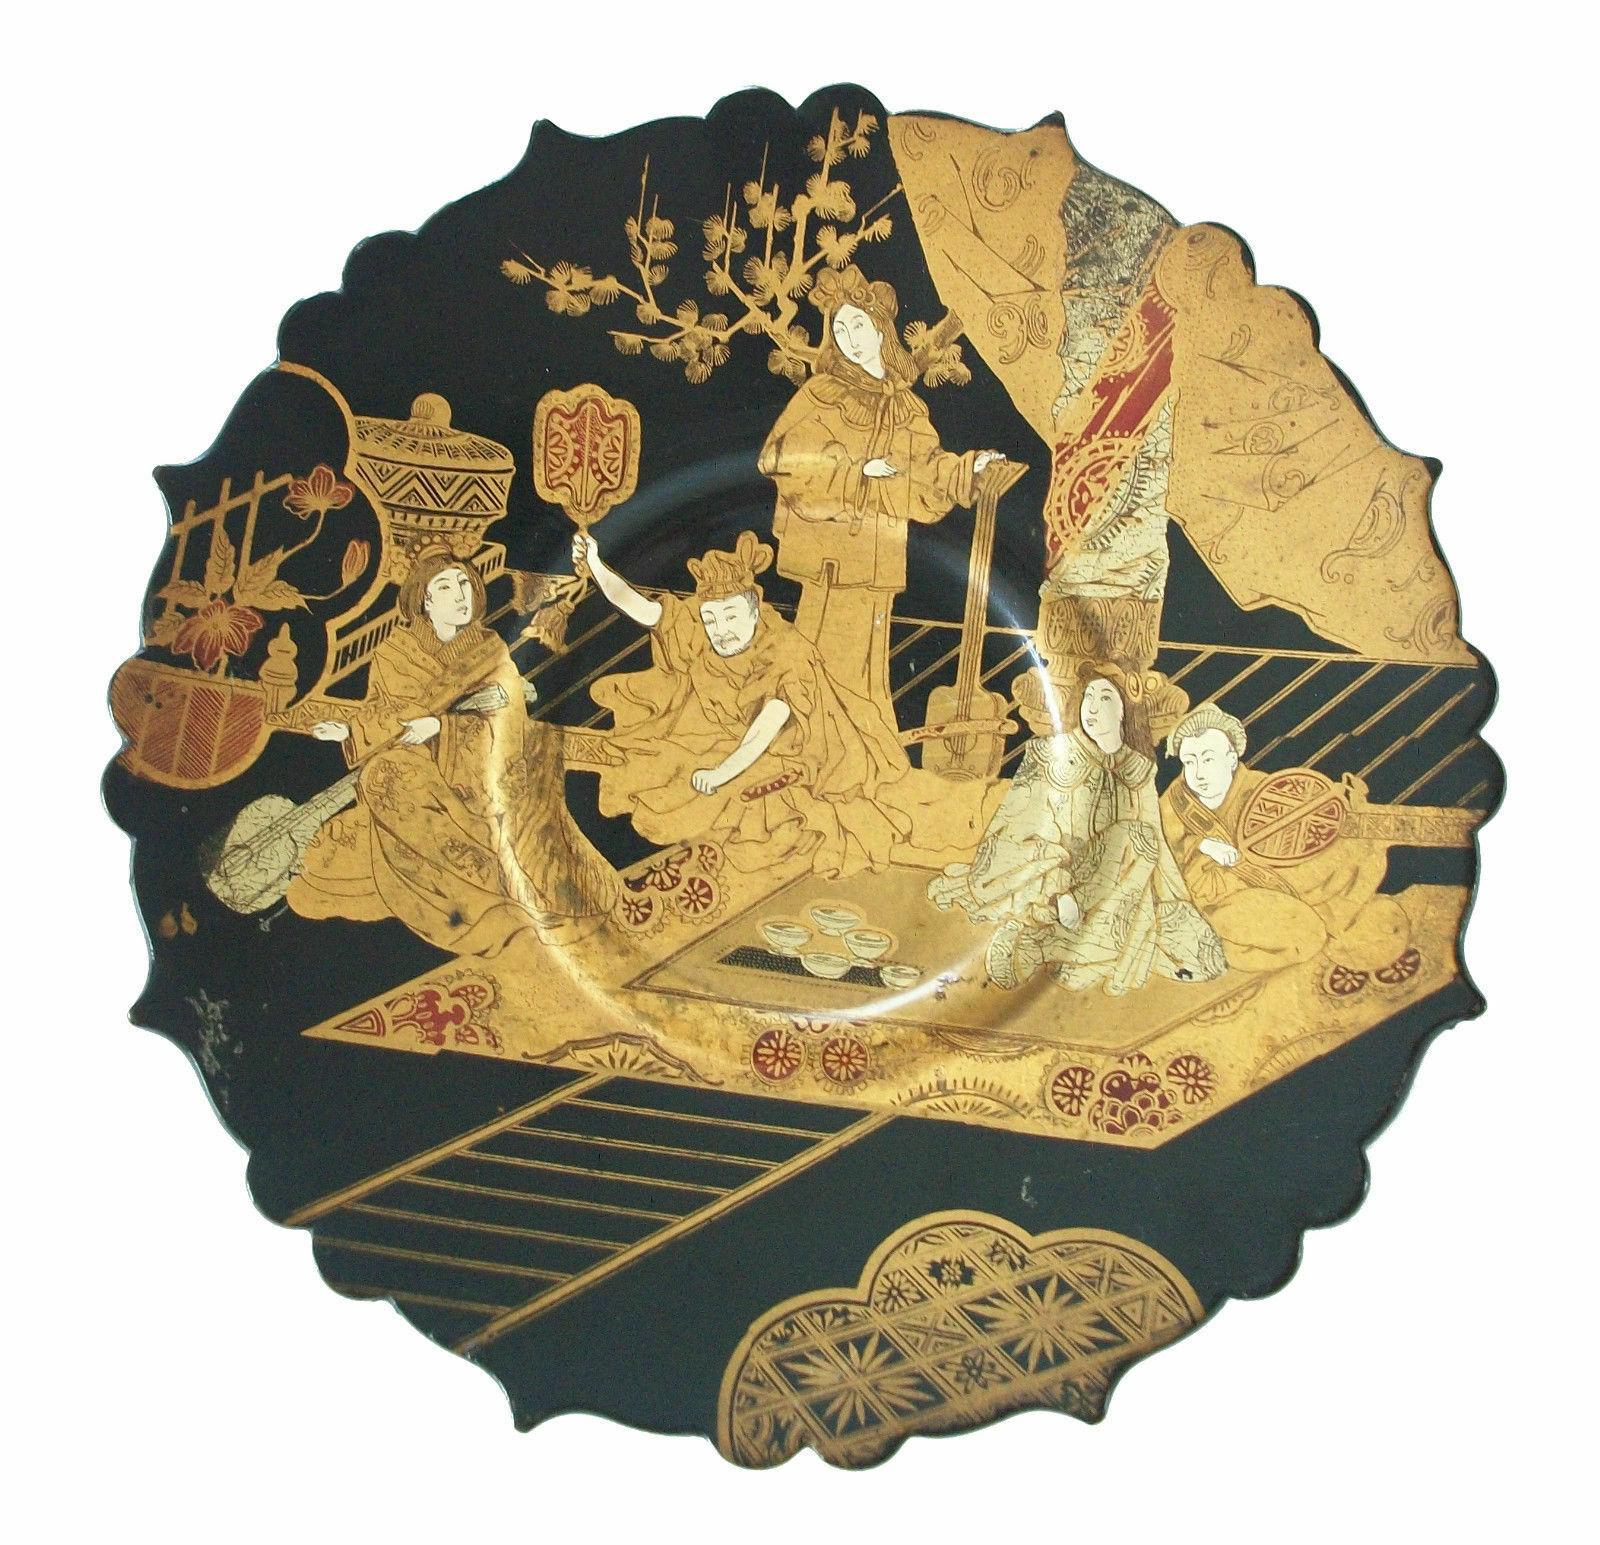 Orientalischer handbemalter und vergoldeter schwarzer Lackteller aus Pappmaché auf Ständer - möglicherweise von Adt Frères - außergewöhnliches Detail - unsigniert - Ende 19. Jahrhundert.

Hervorragender/außergewöhnlicher antiker Zustand - kein